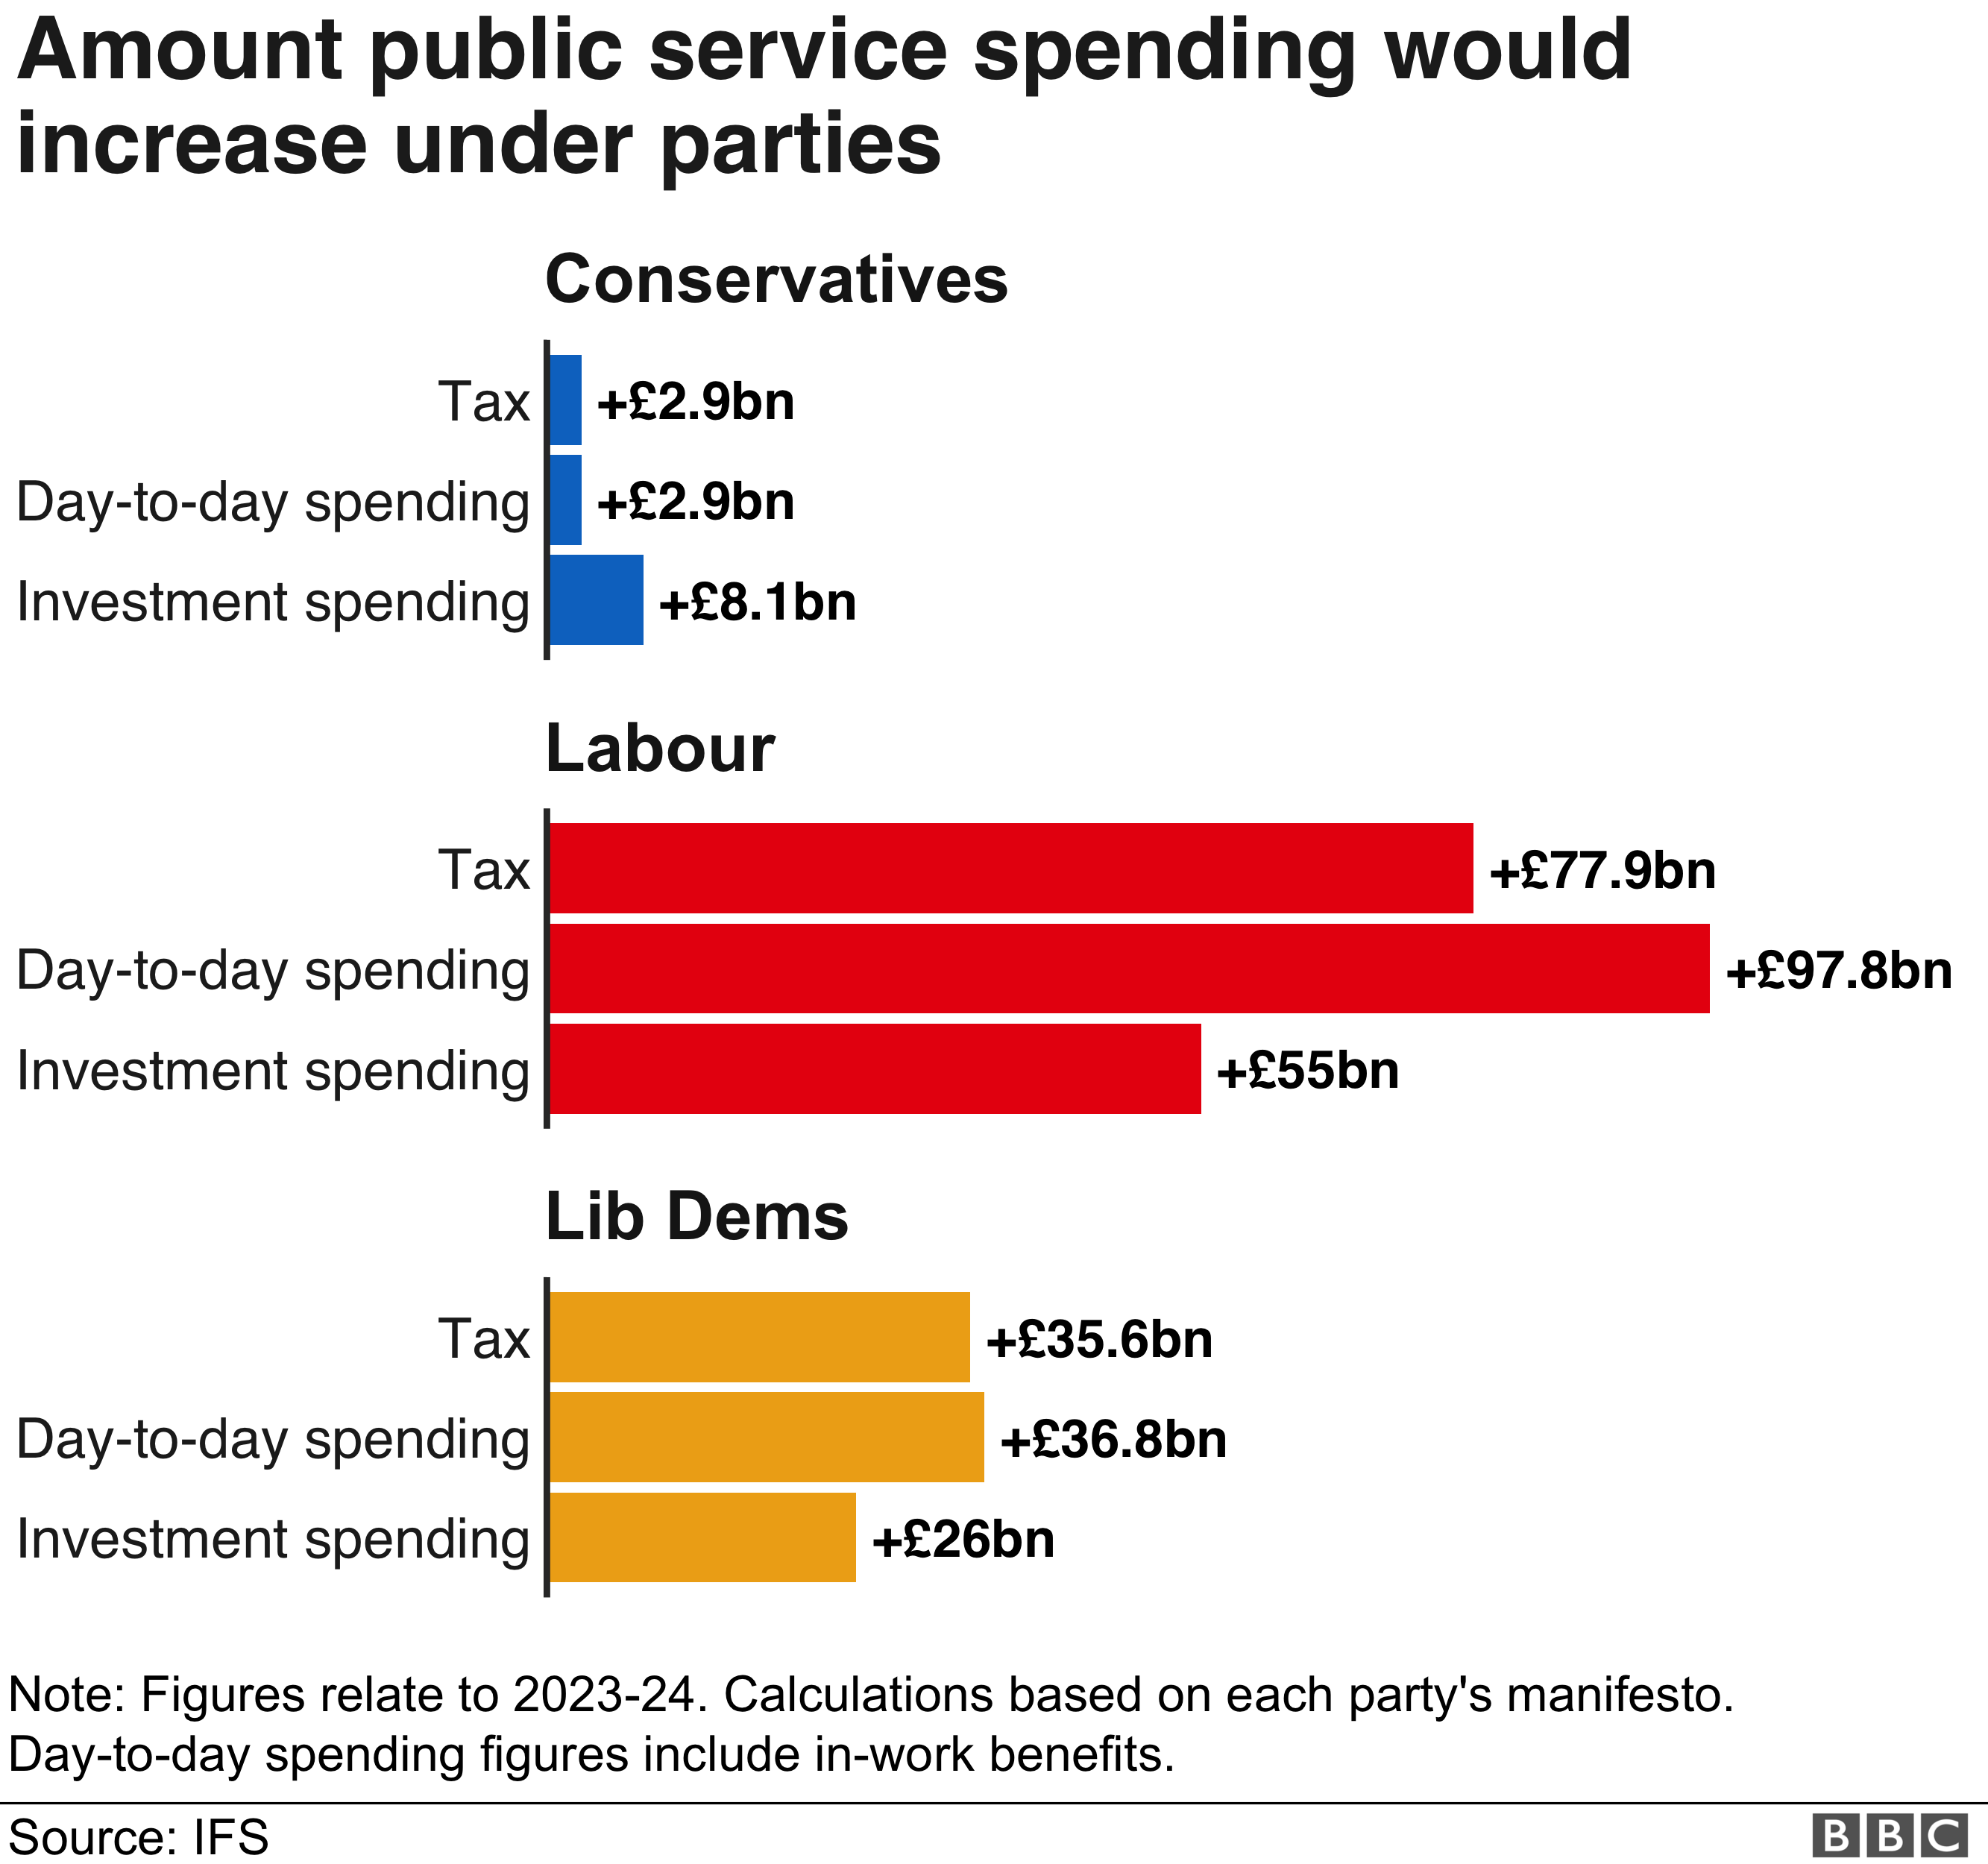 Гистограмма, показывающая, сколько денег намеревается потратить каждая политическая партия в соответствии с планами манифеста